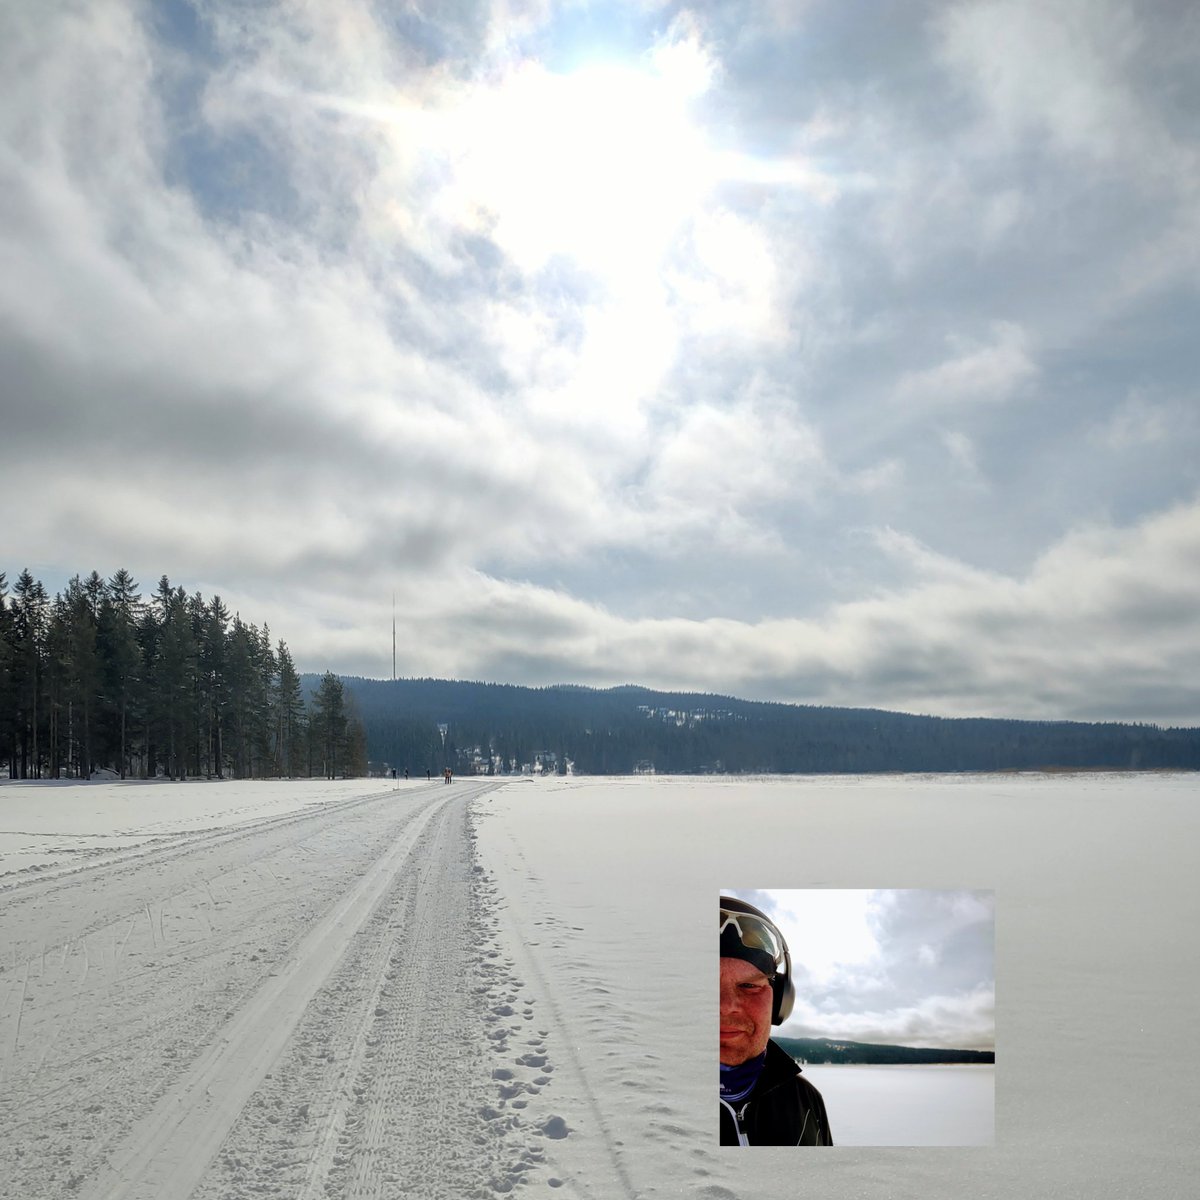 Aamupäivän hiihtelyä äänikirjaa kuunnellen. Nimensä mukainen tuo #aurinkolatu #nuasjärvi #sotkamo